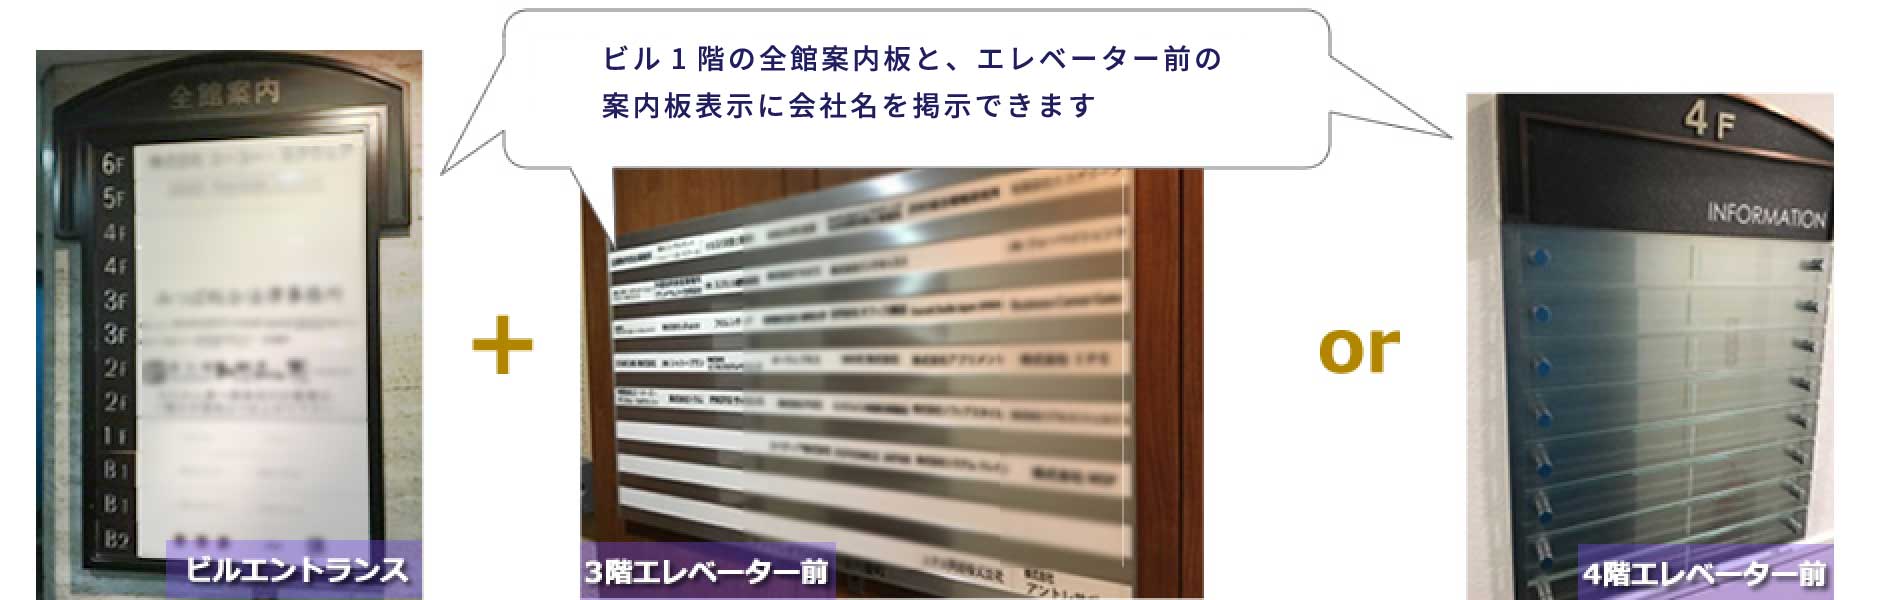 ビル1階の全館案内板と、エレベーター前の案内板表示に会社名を掲示できます